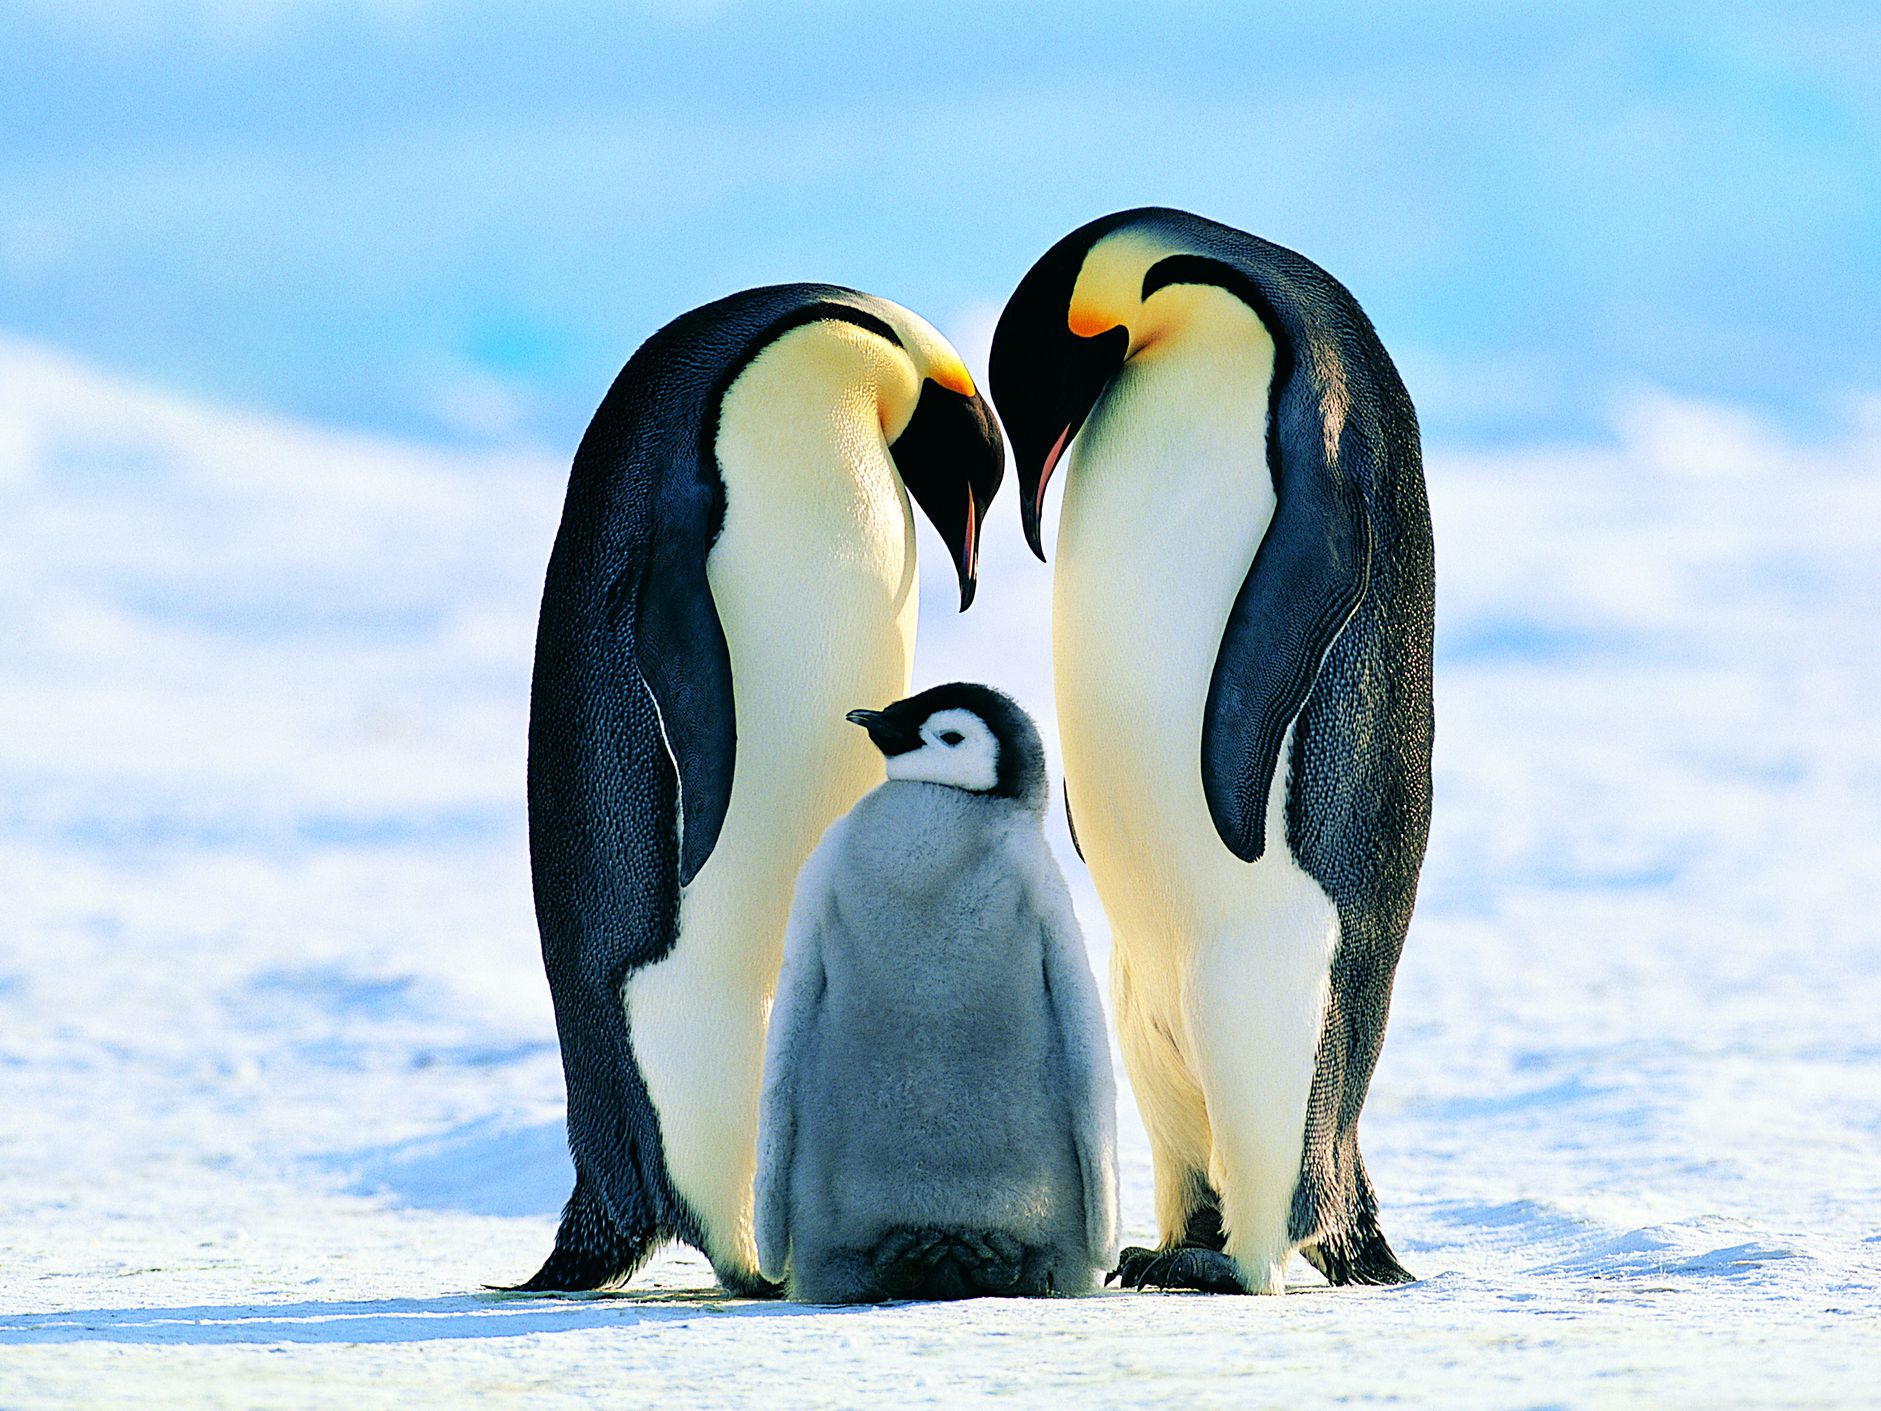 Emperor penguins face extinction